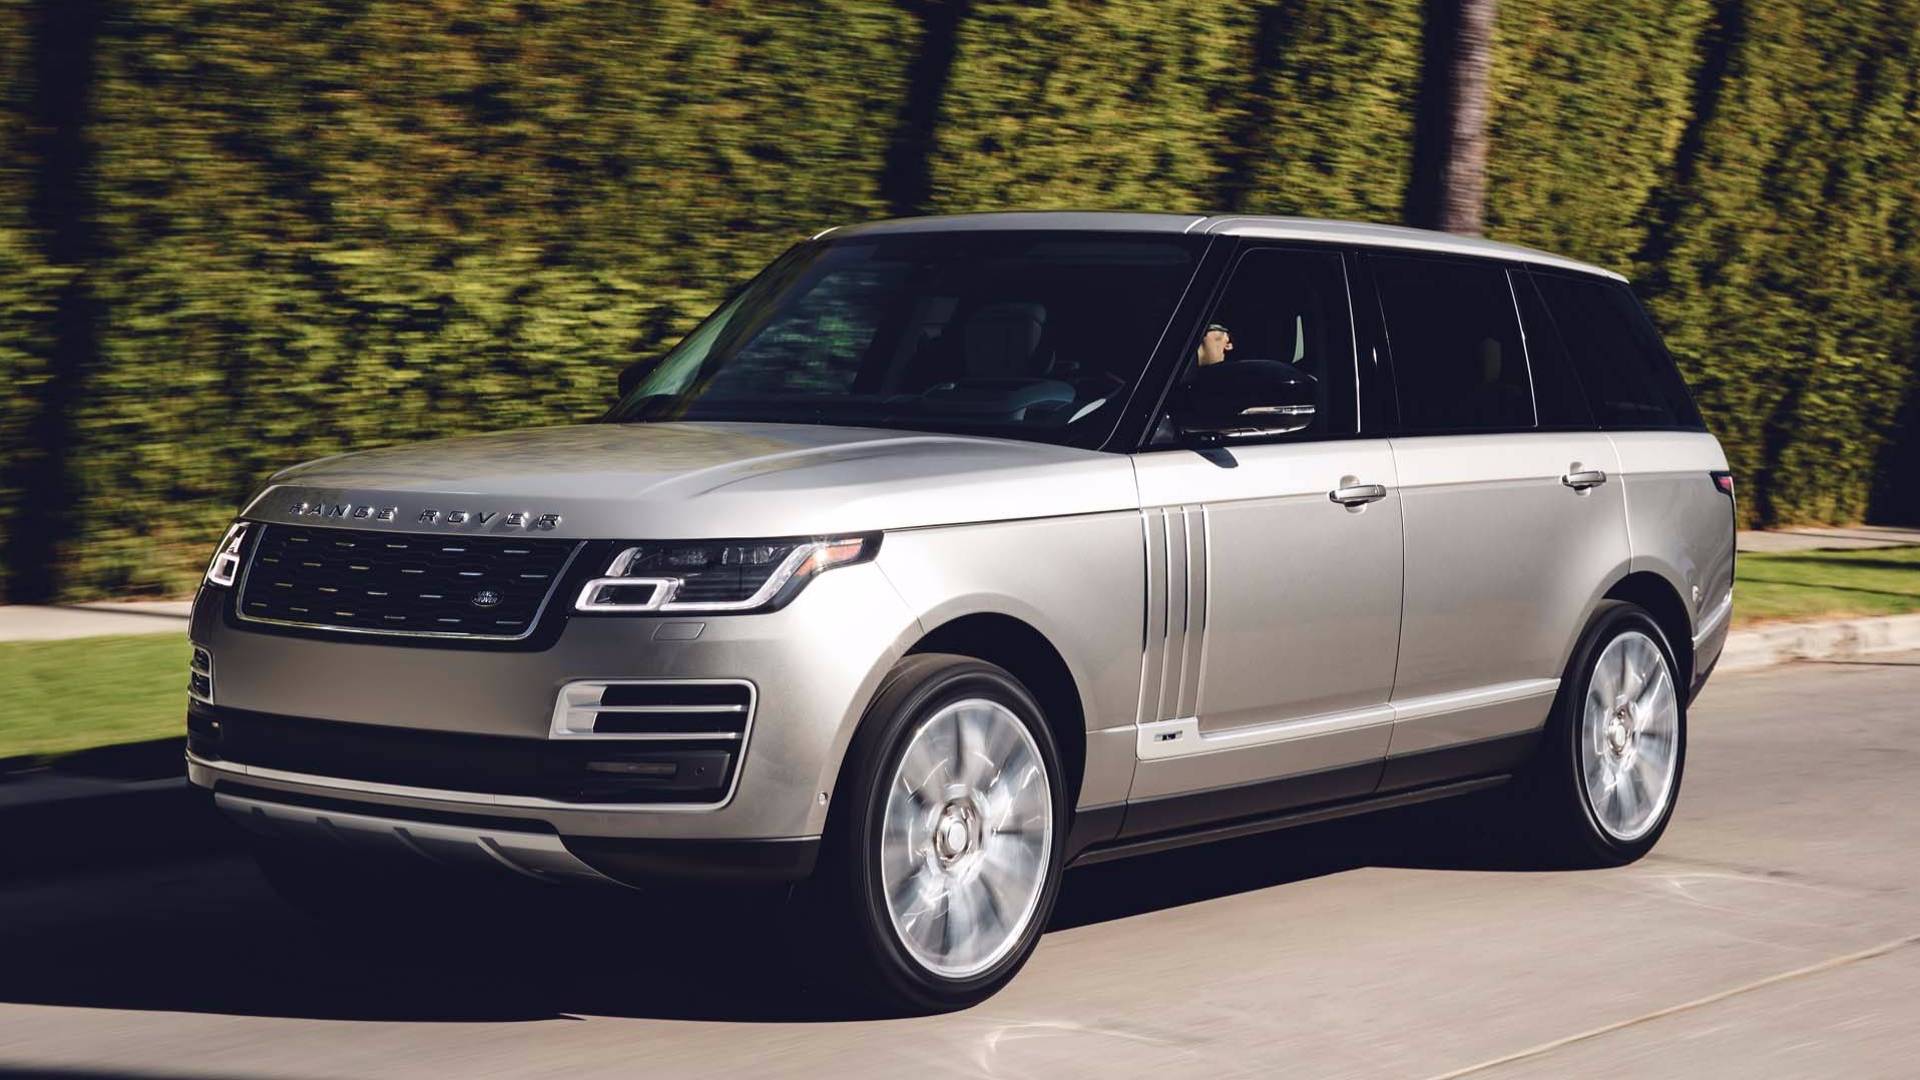 Range Rover image